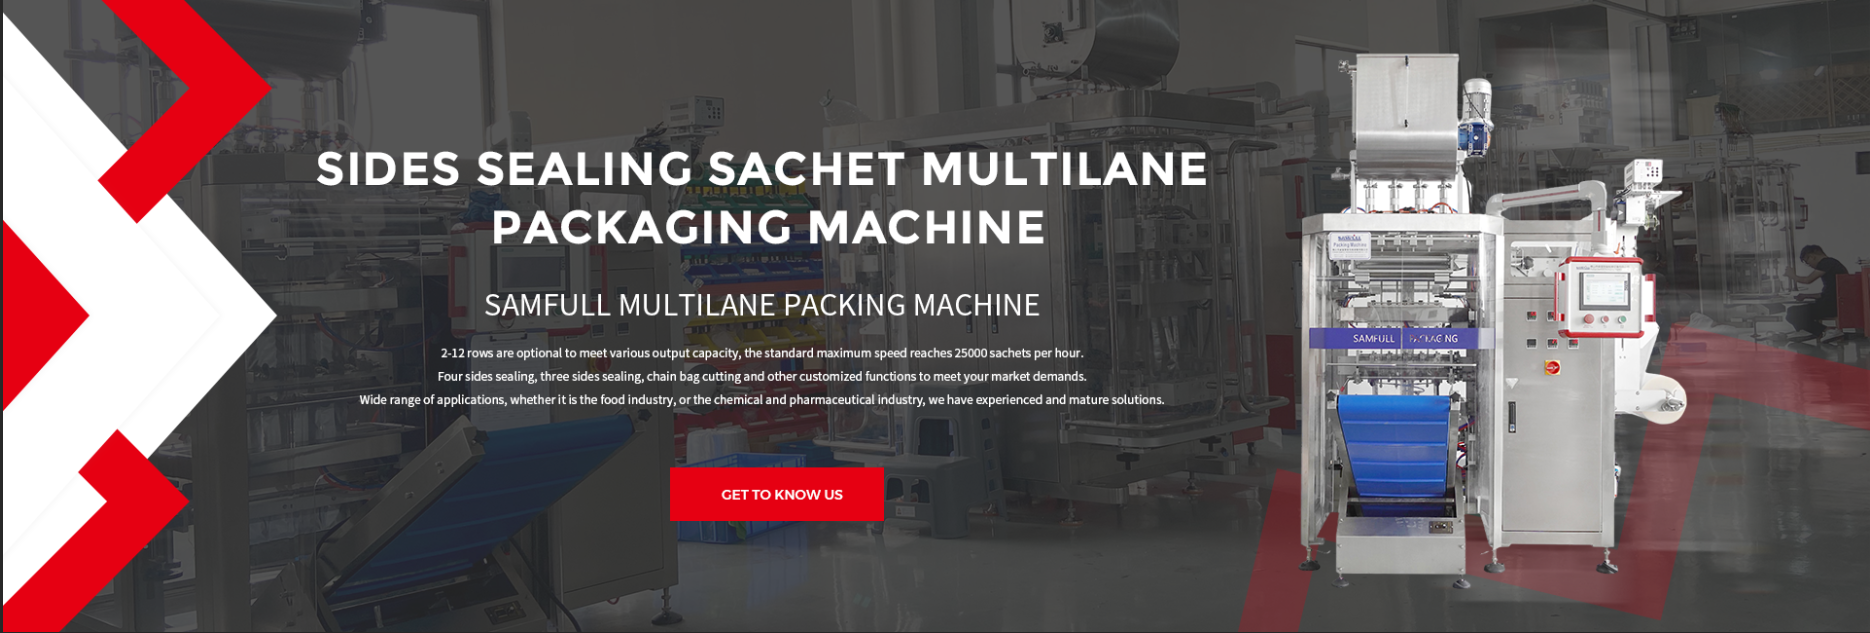 Sides Sealing Sachet Multilane Packaging Machine